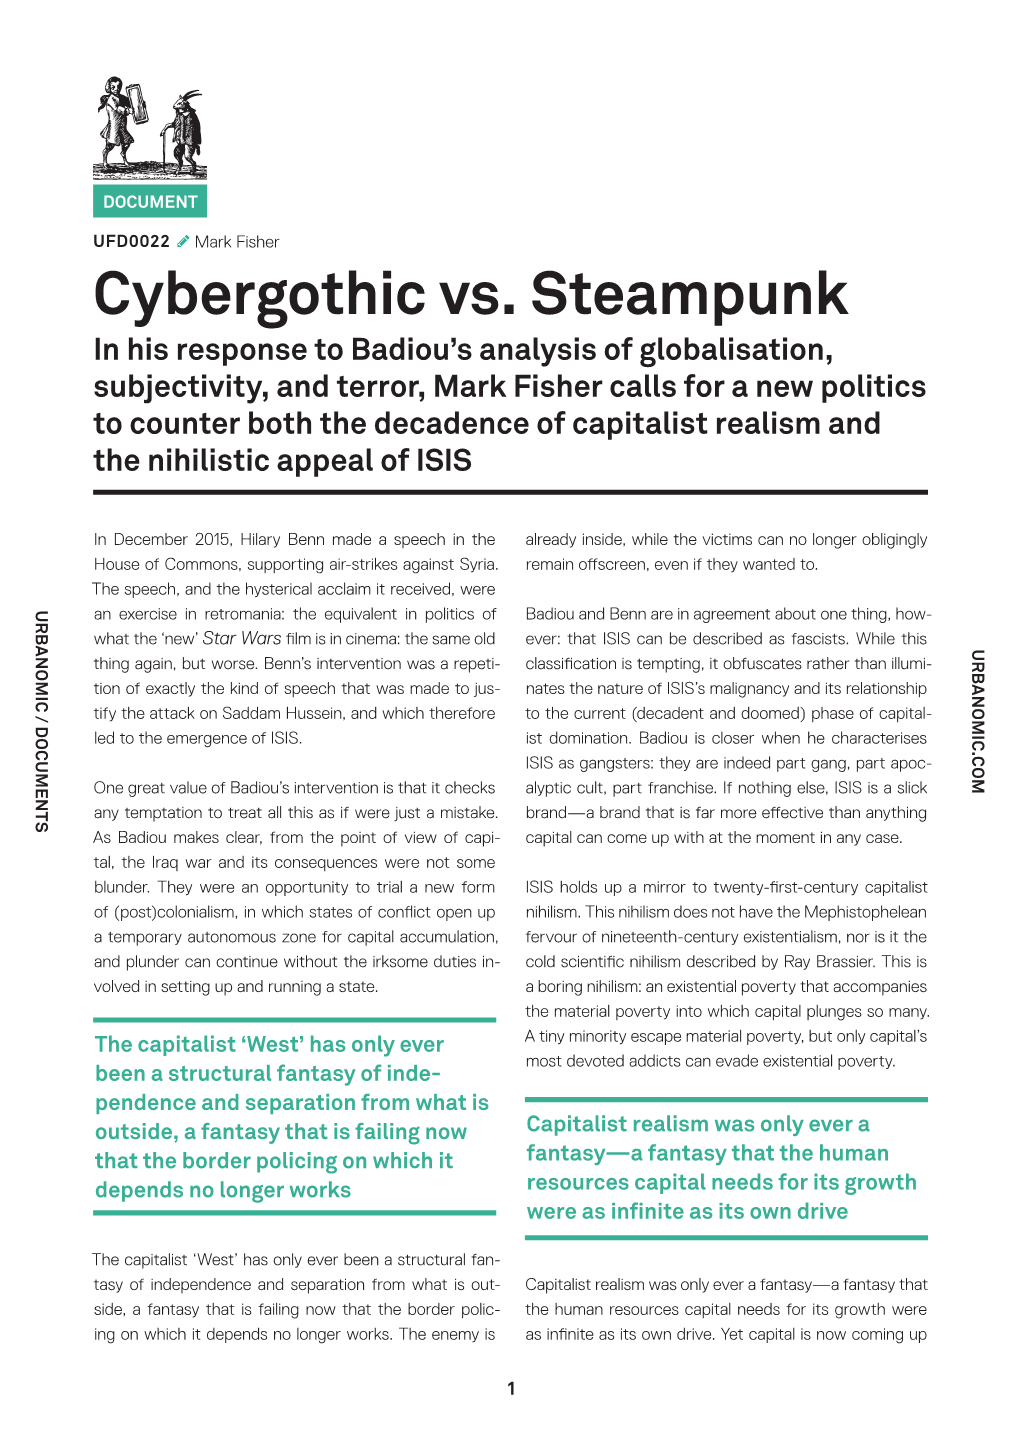 Cybergothic Vs. Steampunk